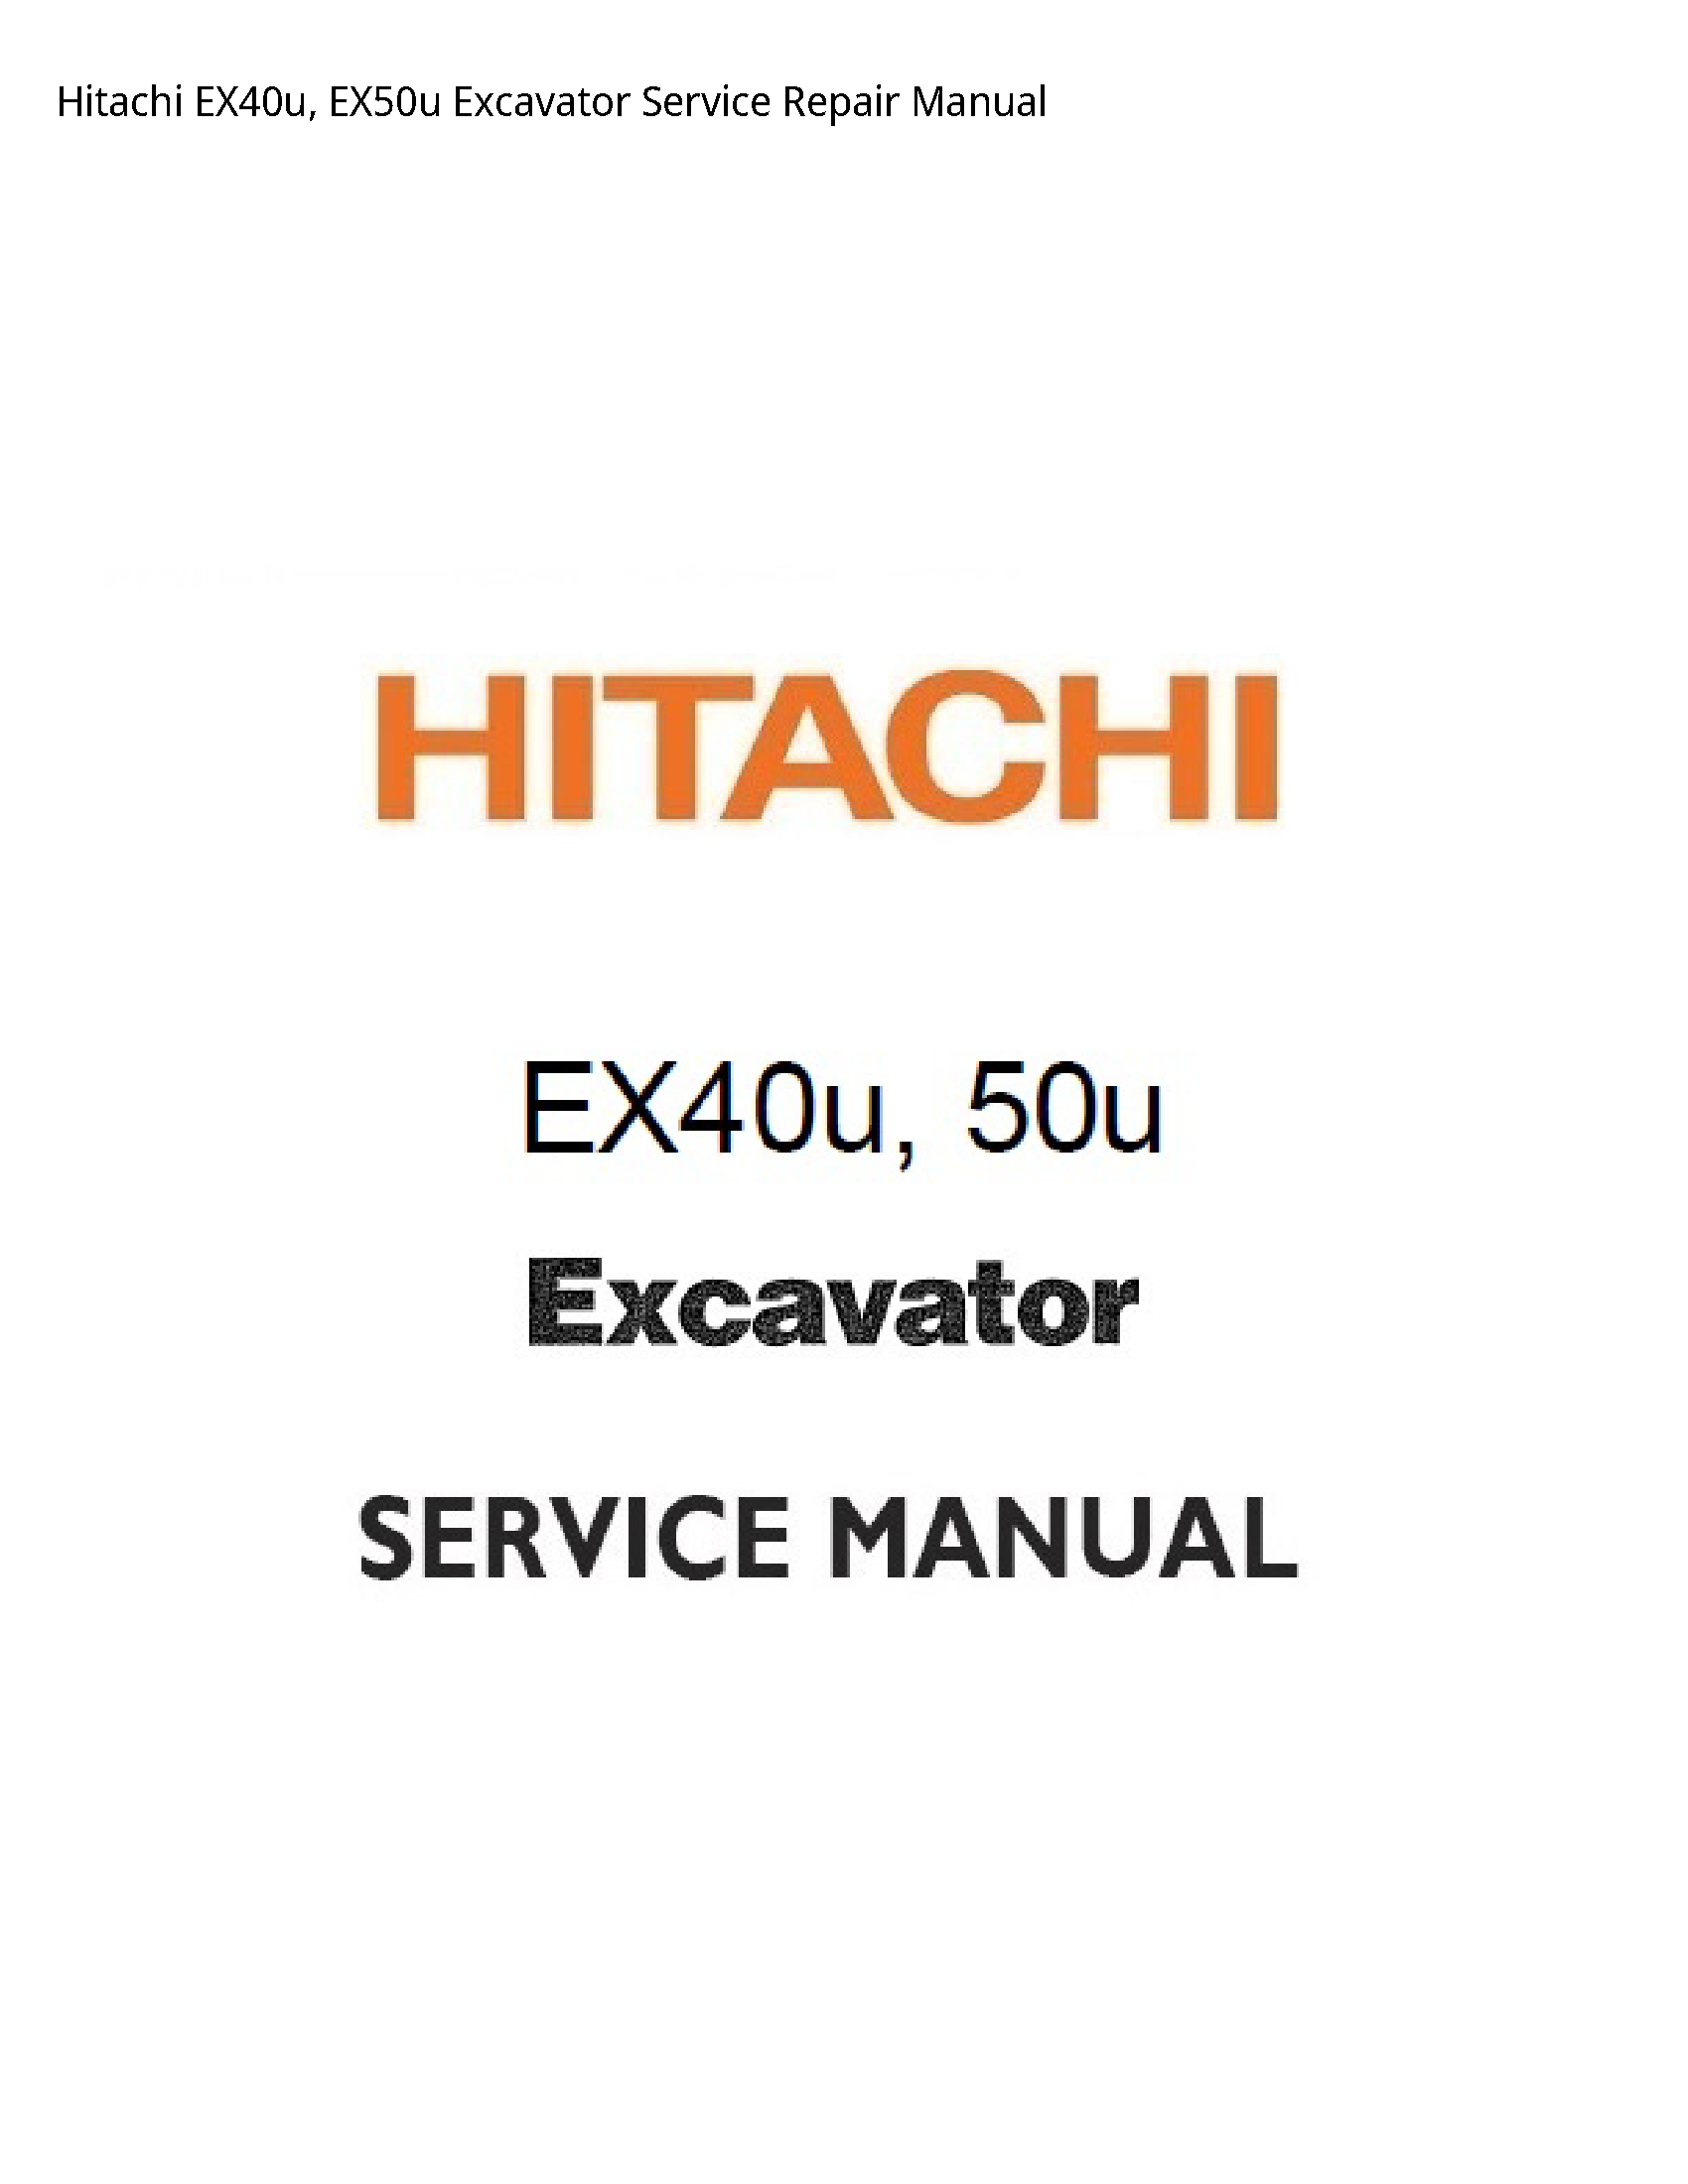 Hitachi EX40u Excavator manual